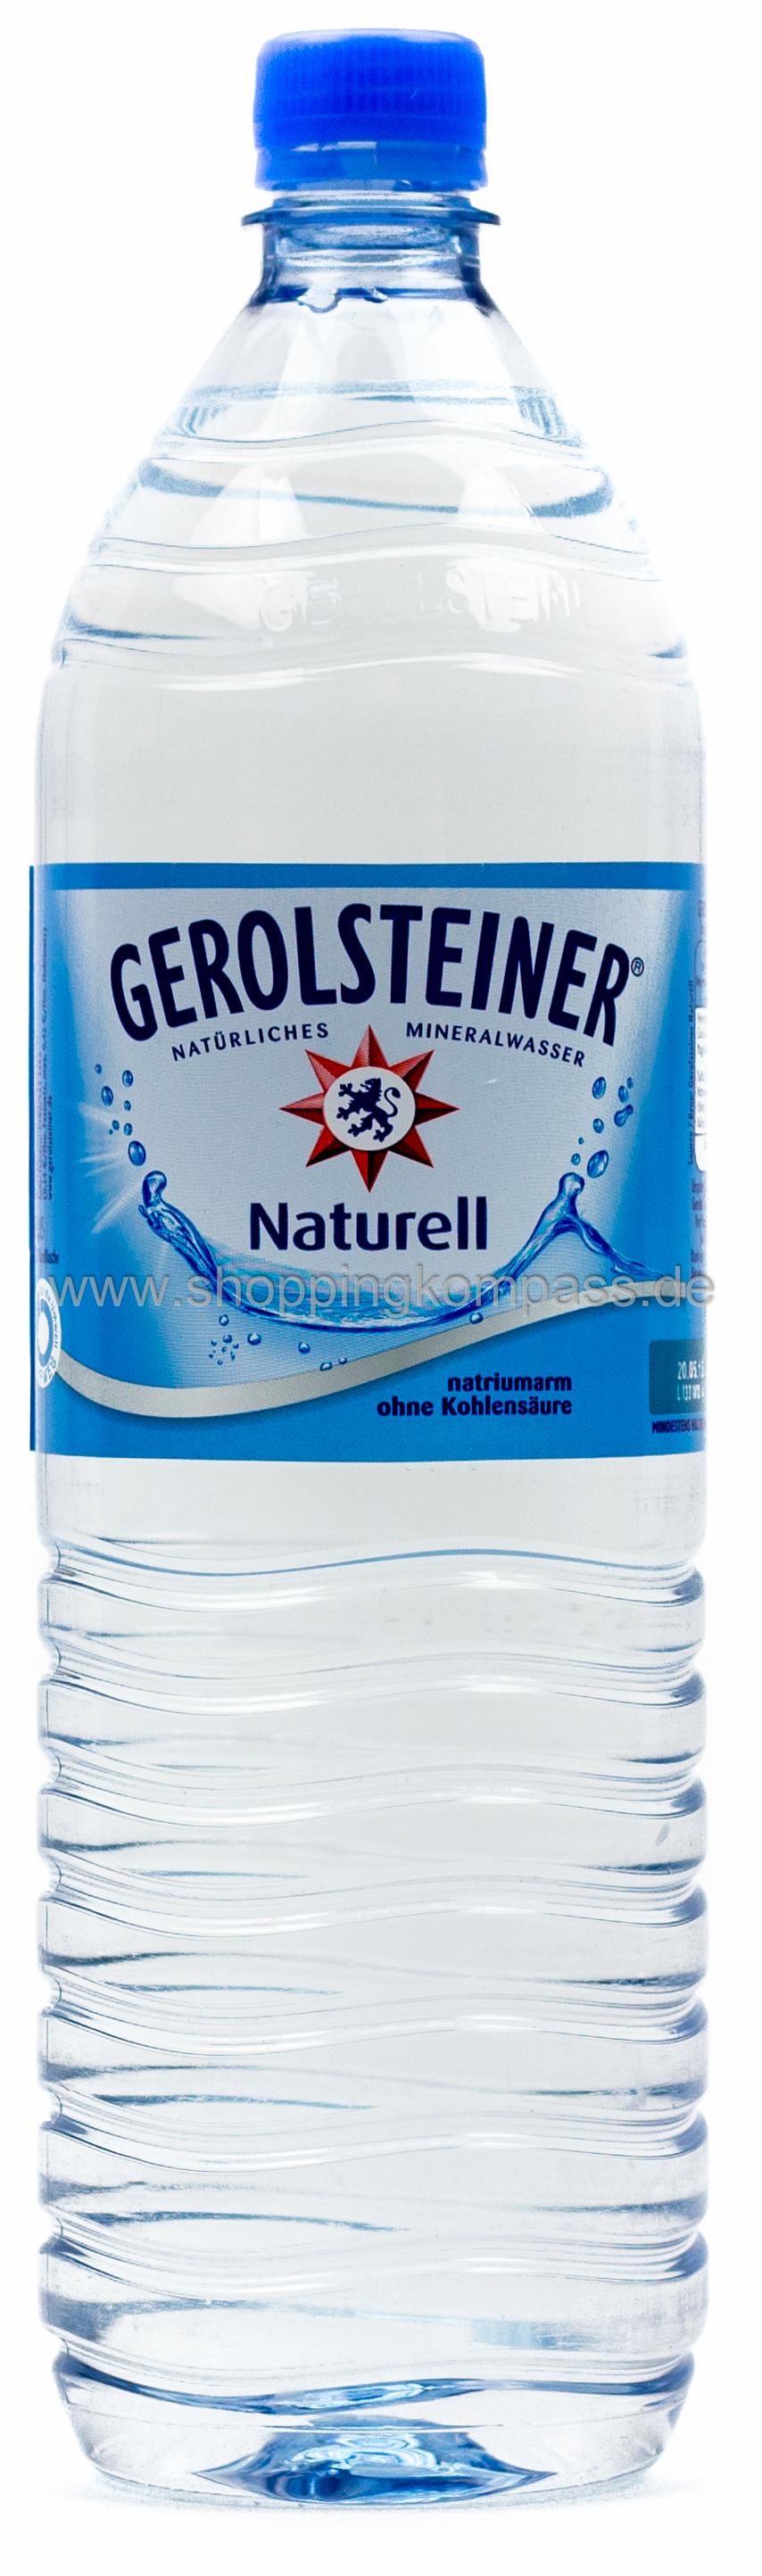 Gerolsteiner Mineralwasser Naturell Kasten 6 x 1,5 l PET Mehrweg